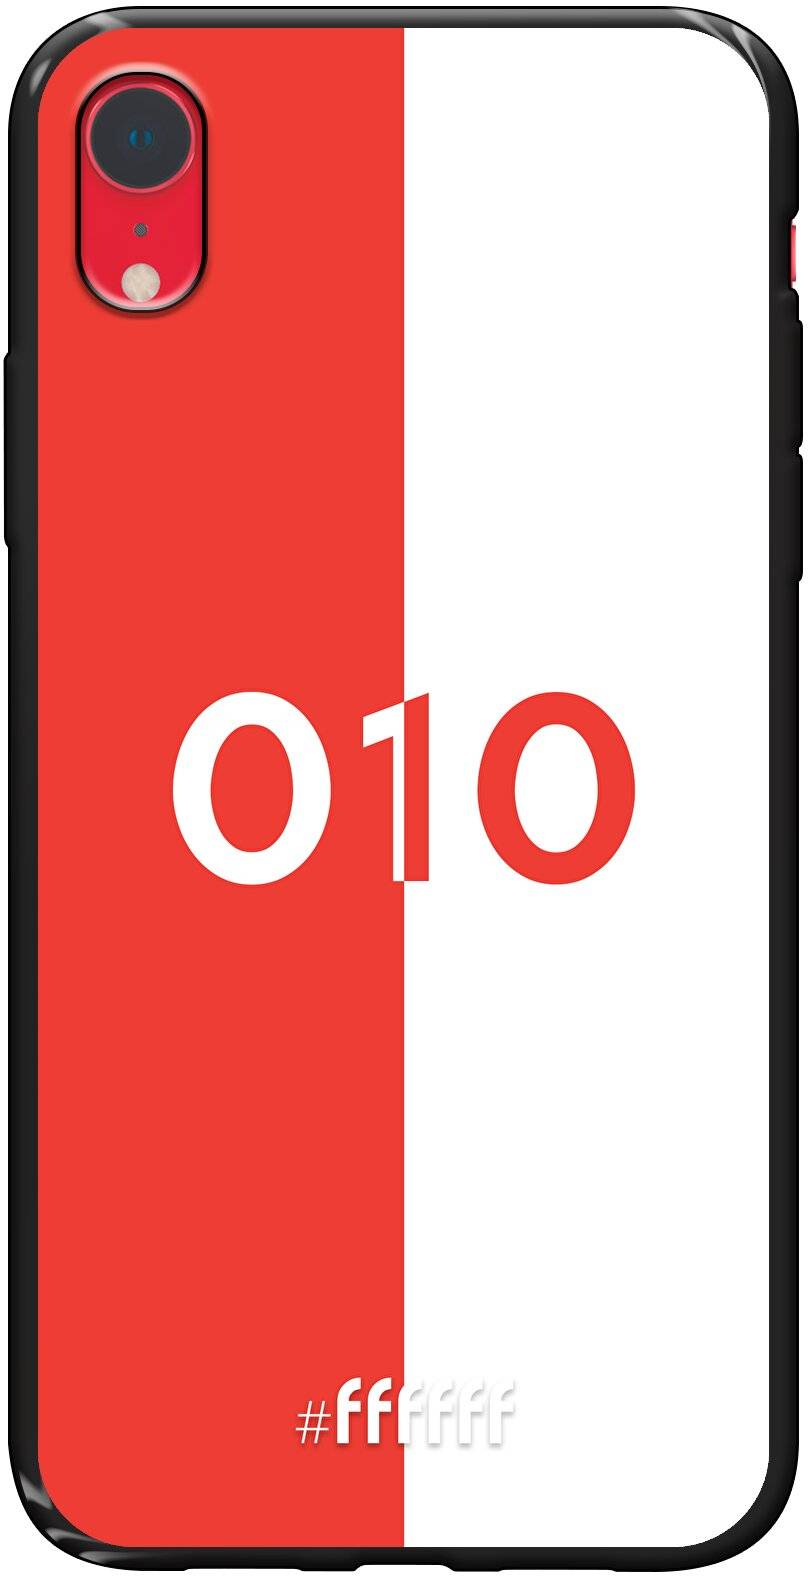 Feyenoord - 010 iPhone Xr